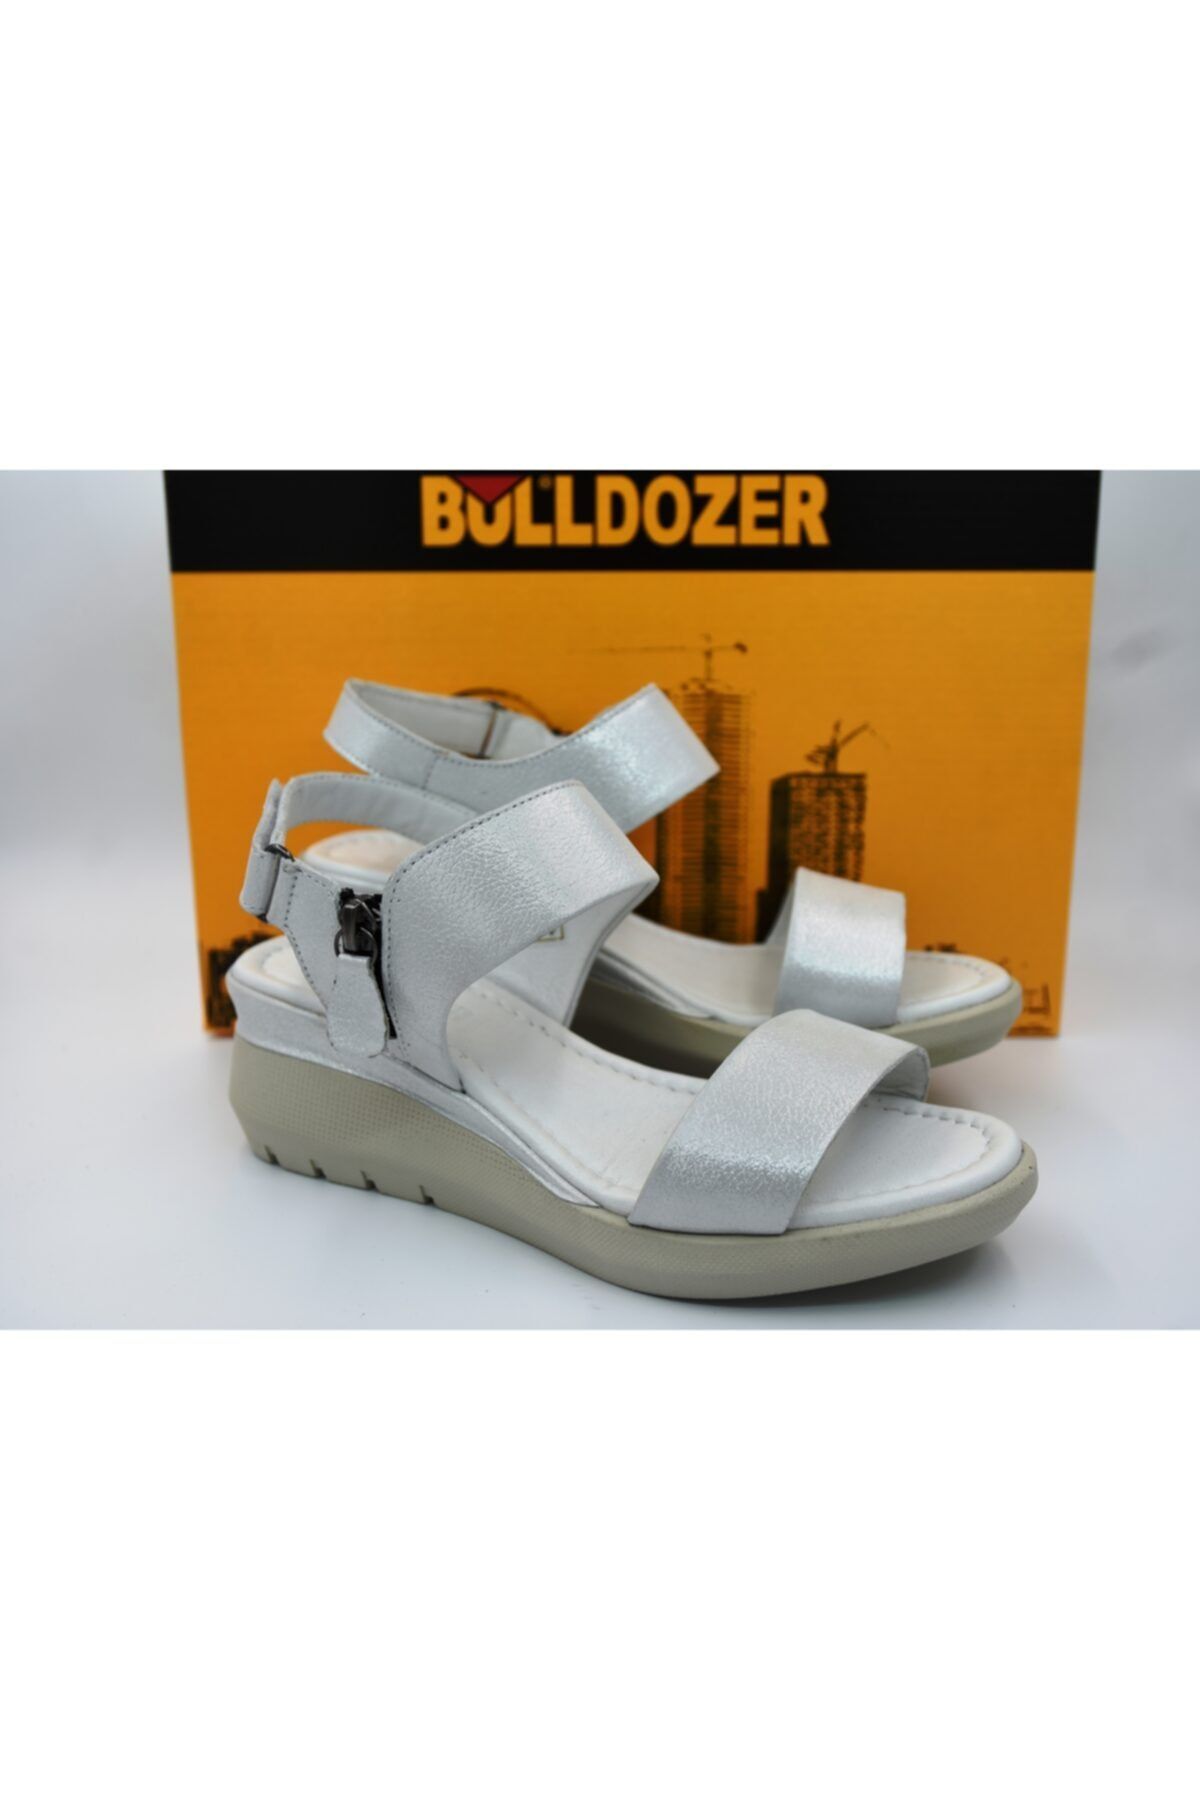 Bulldozer 211678 Günlük Kadın Sandalet